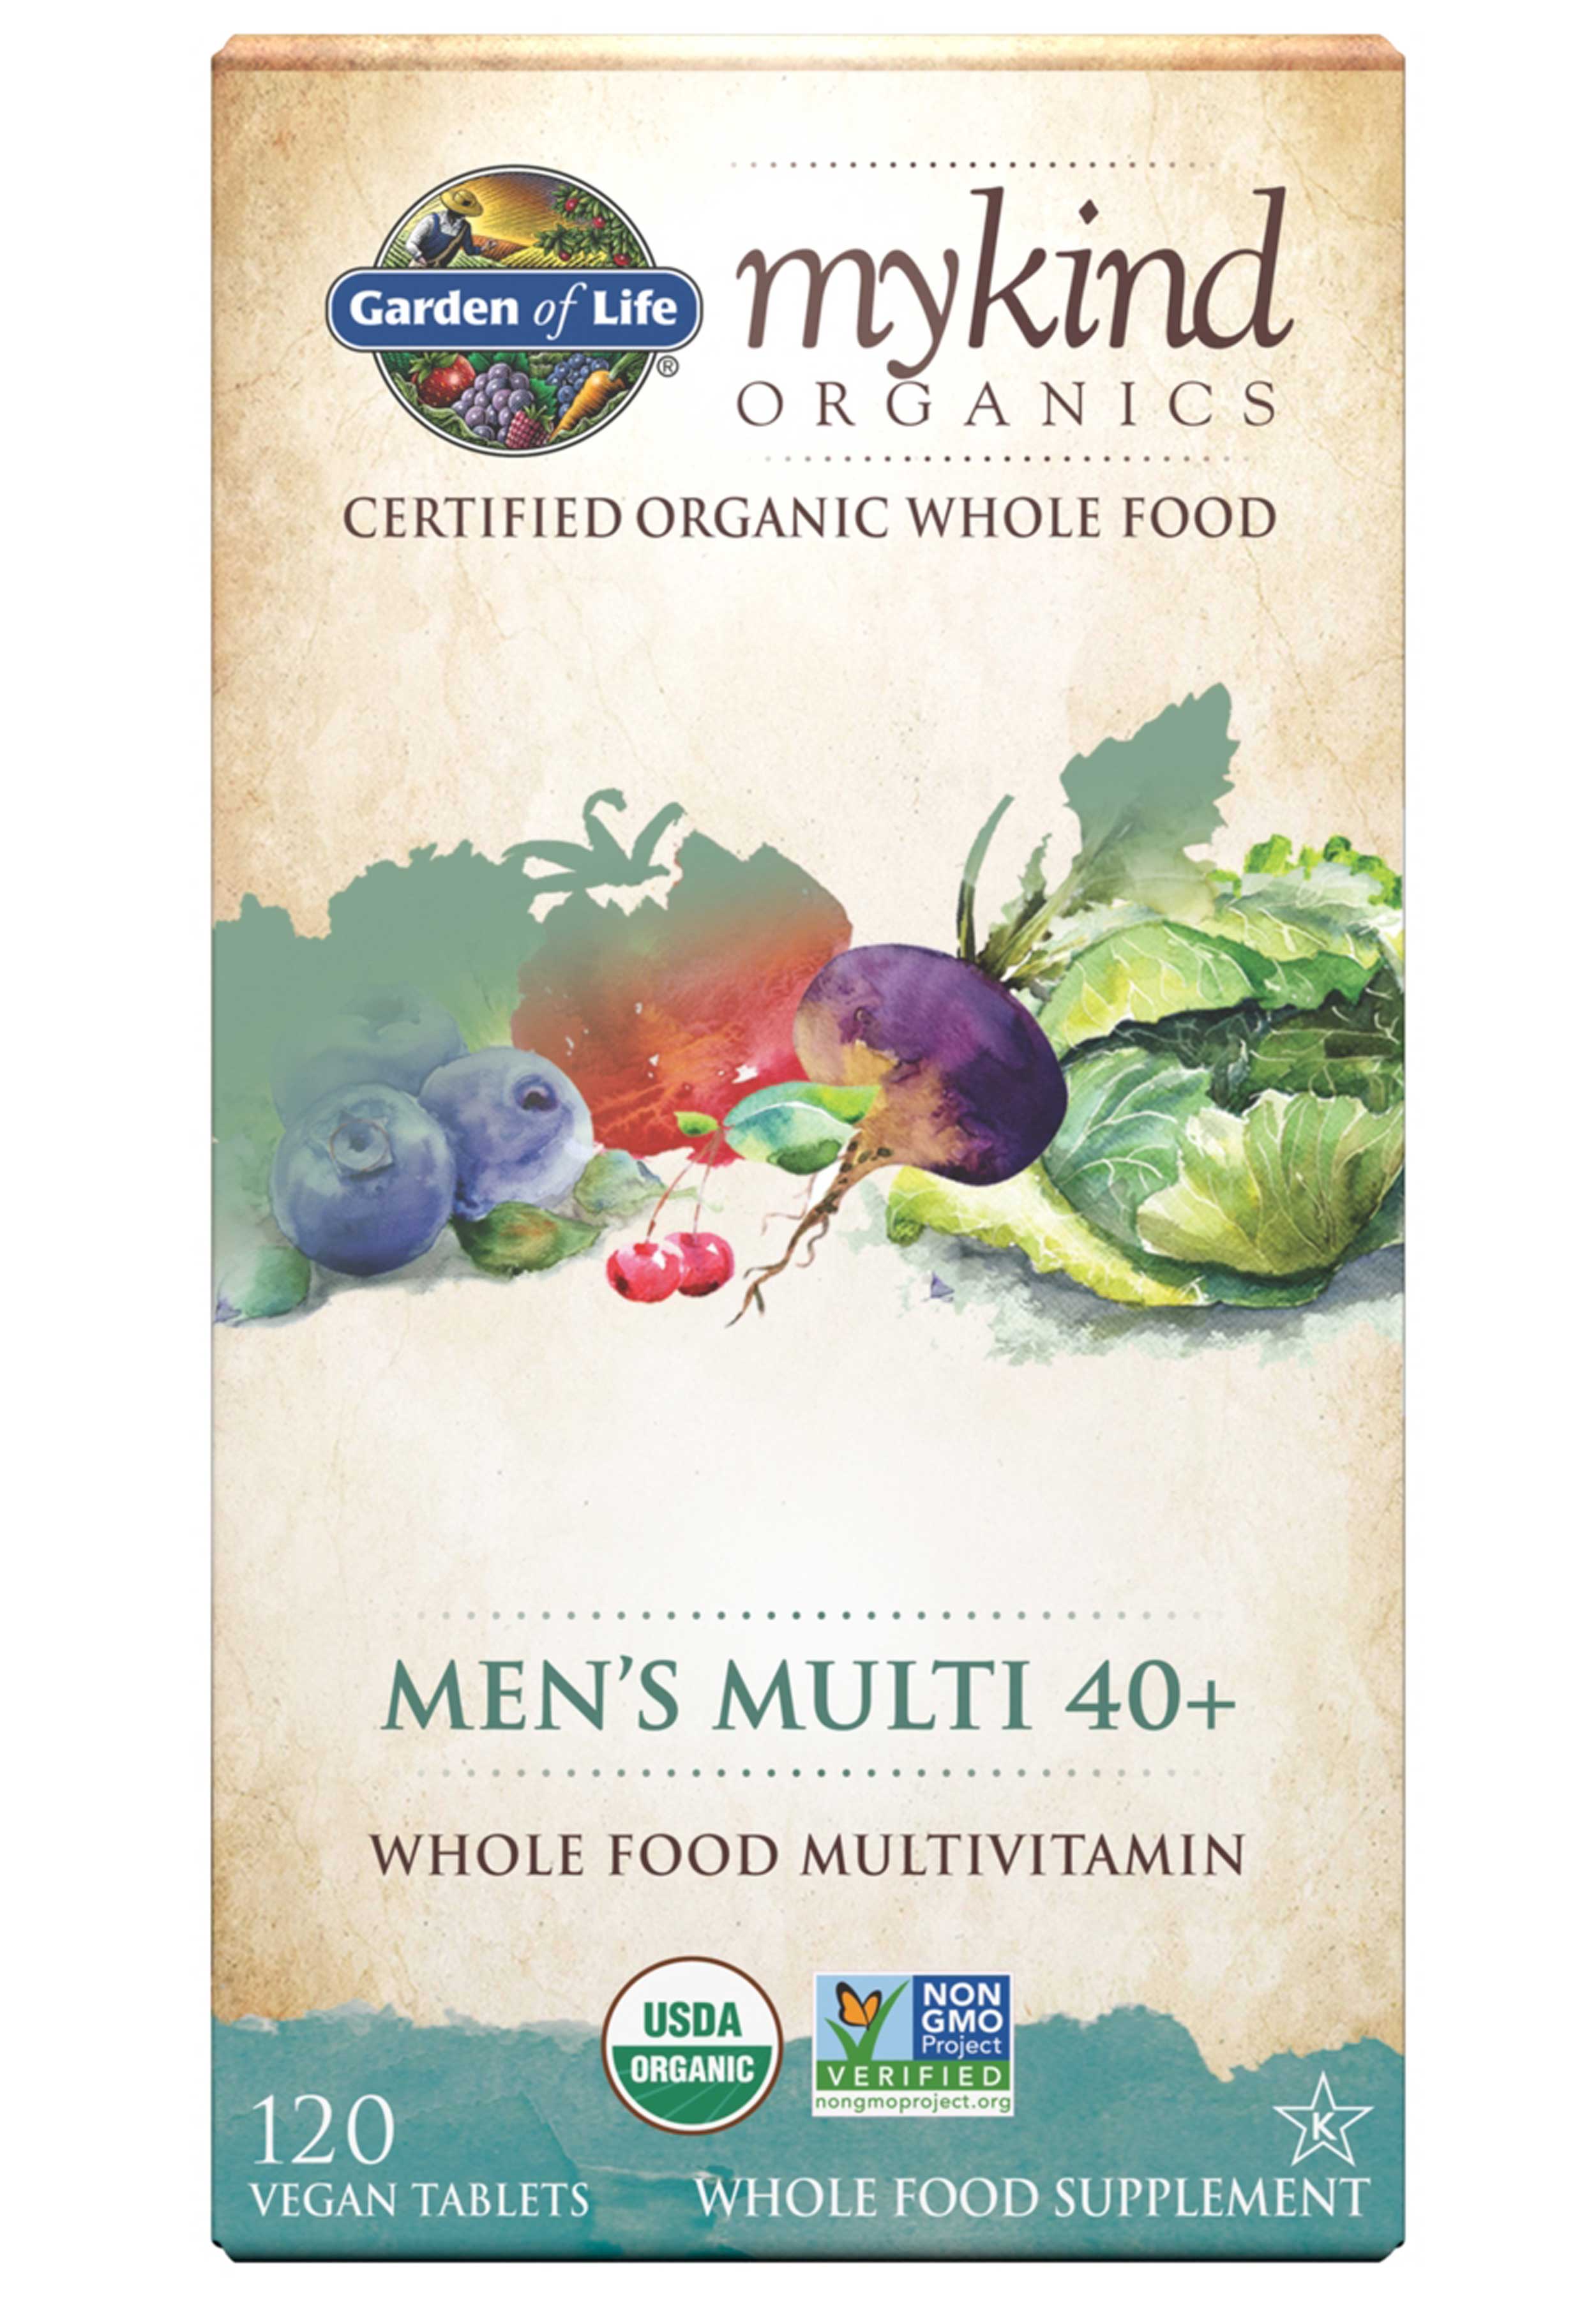 Garden of Life mykind Organics Men's Multivitamin 40+